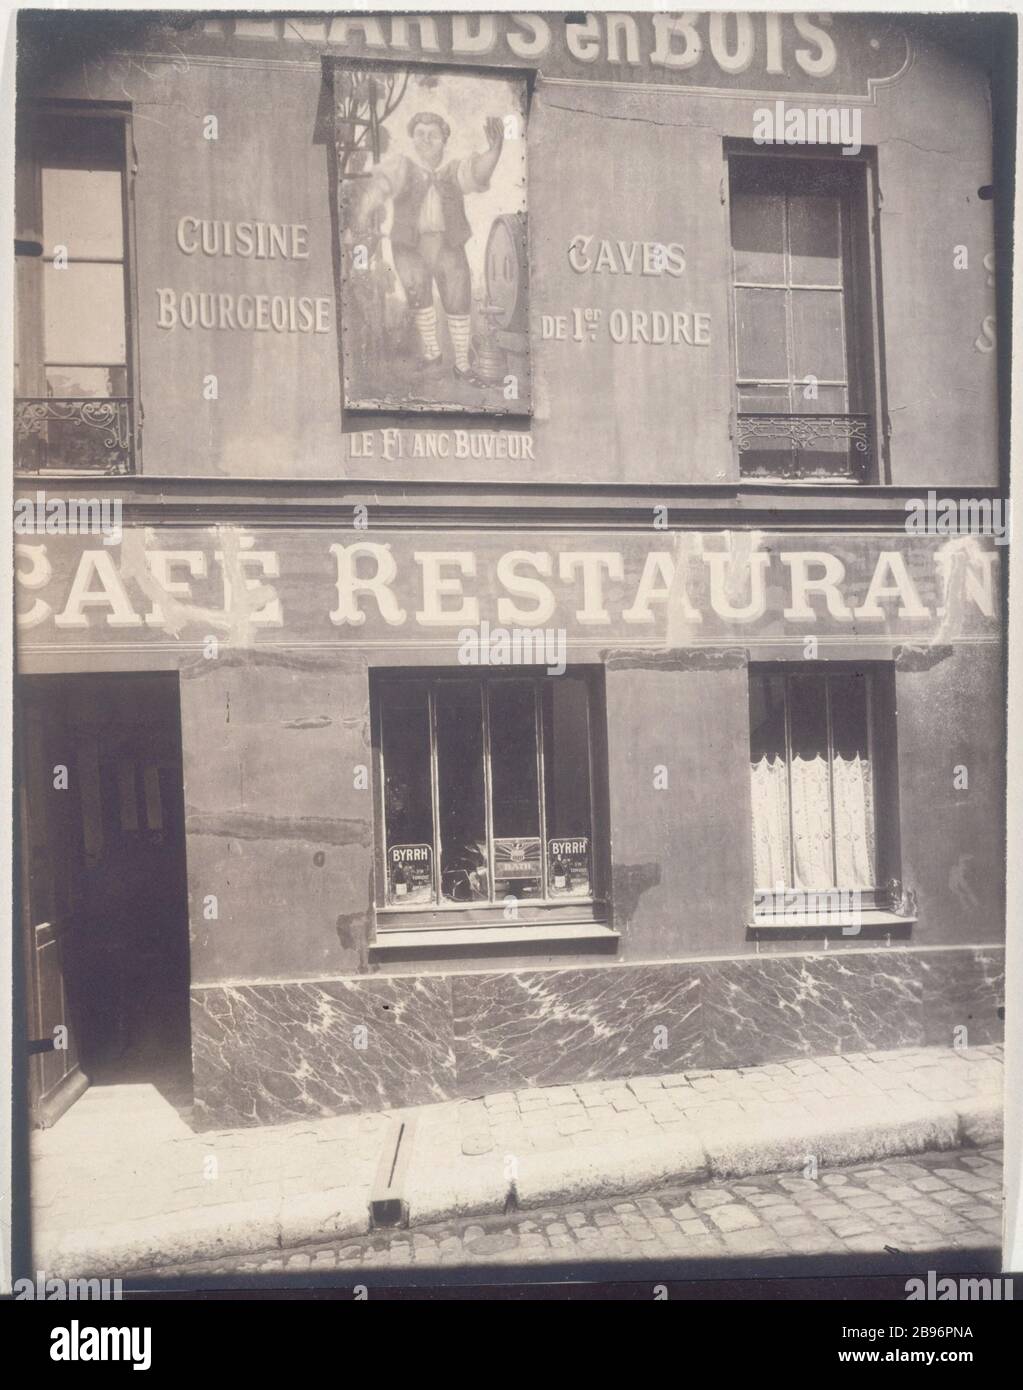 FIRMARE IL FRANCO BEVITORE Enseigne 'le franc buveur', rue Norvins, rue Saint-Rustique, 1922. Photographie d'Eugène Atget (1857-1927). Parigi, musée Carnavalet. Foto Stock